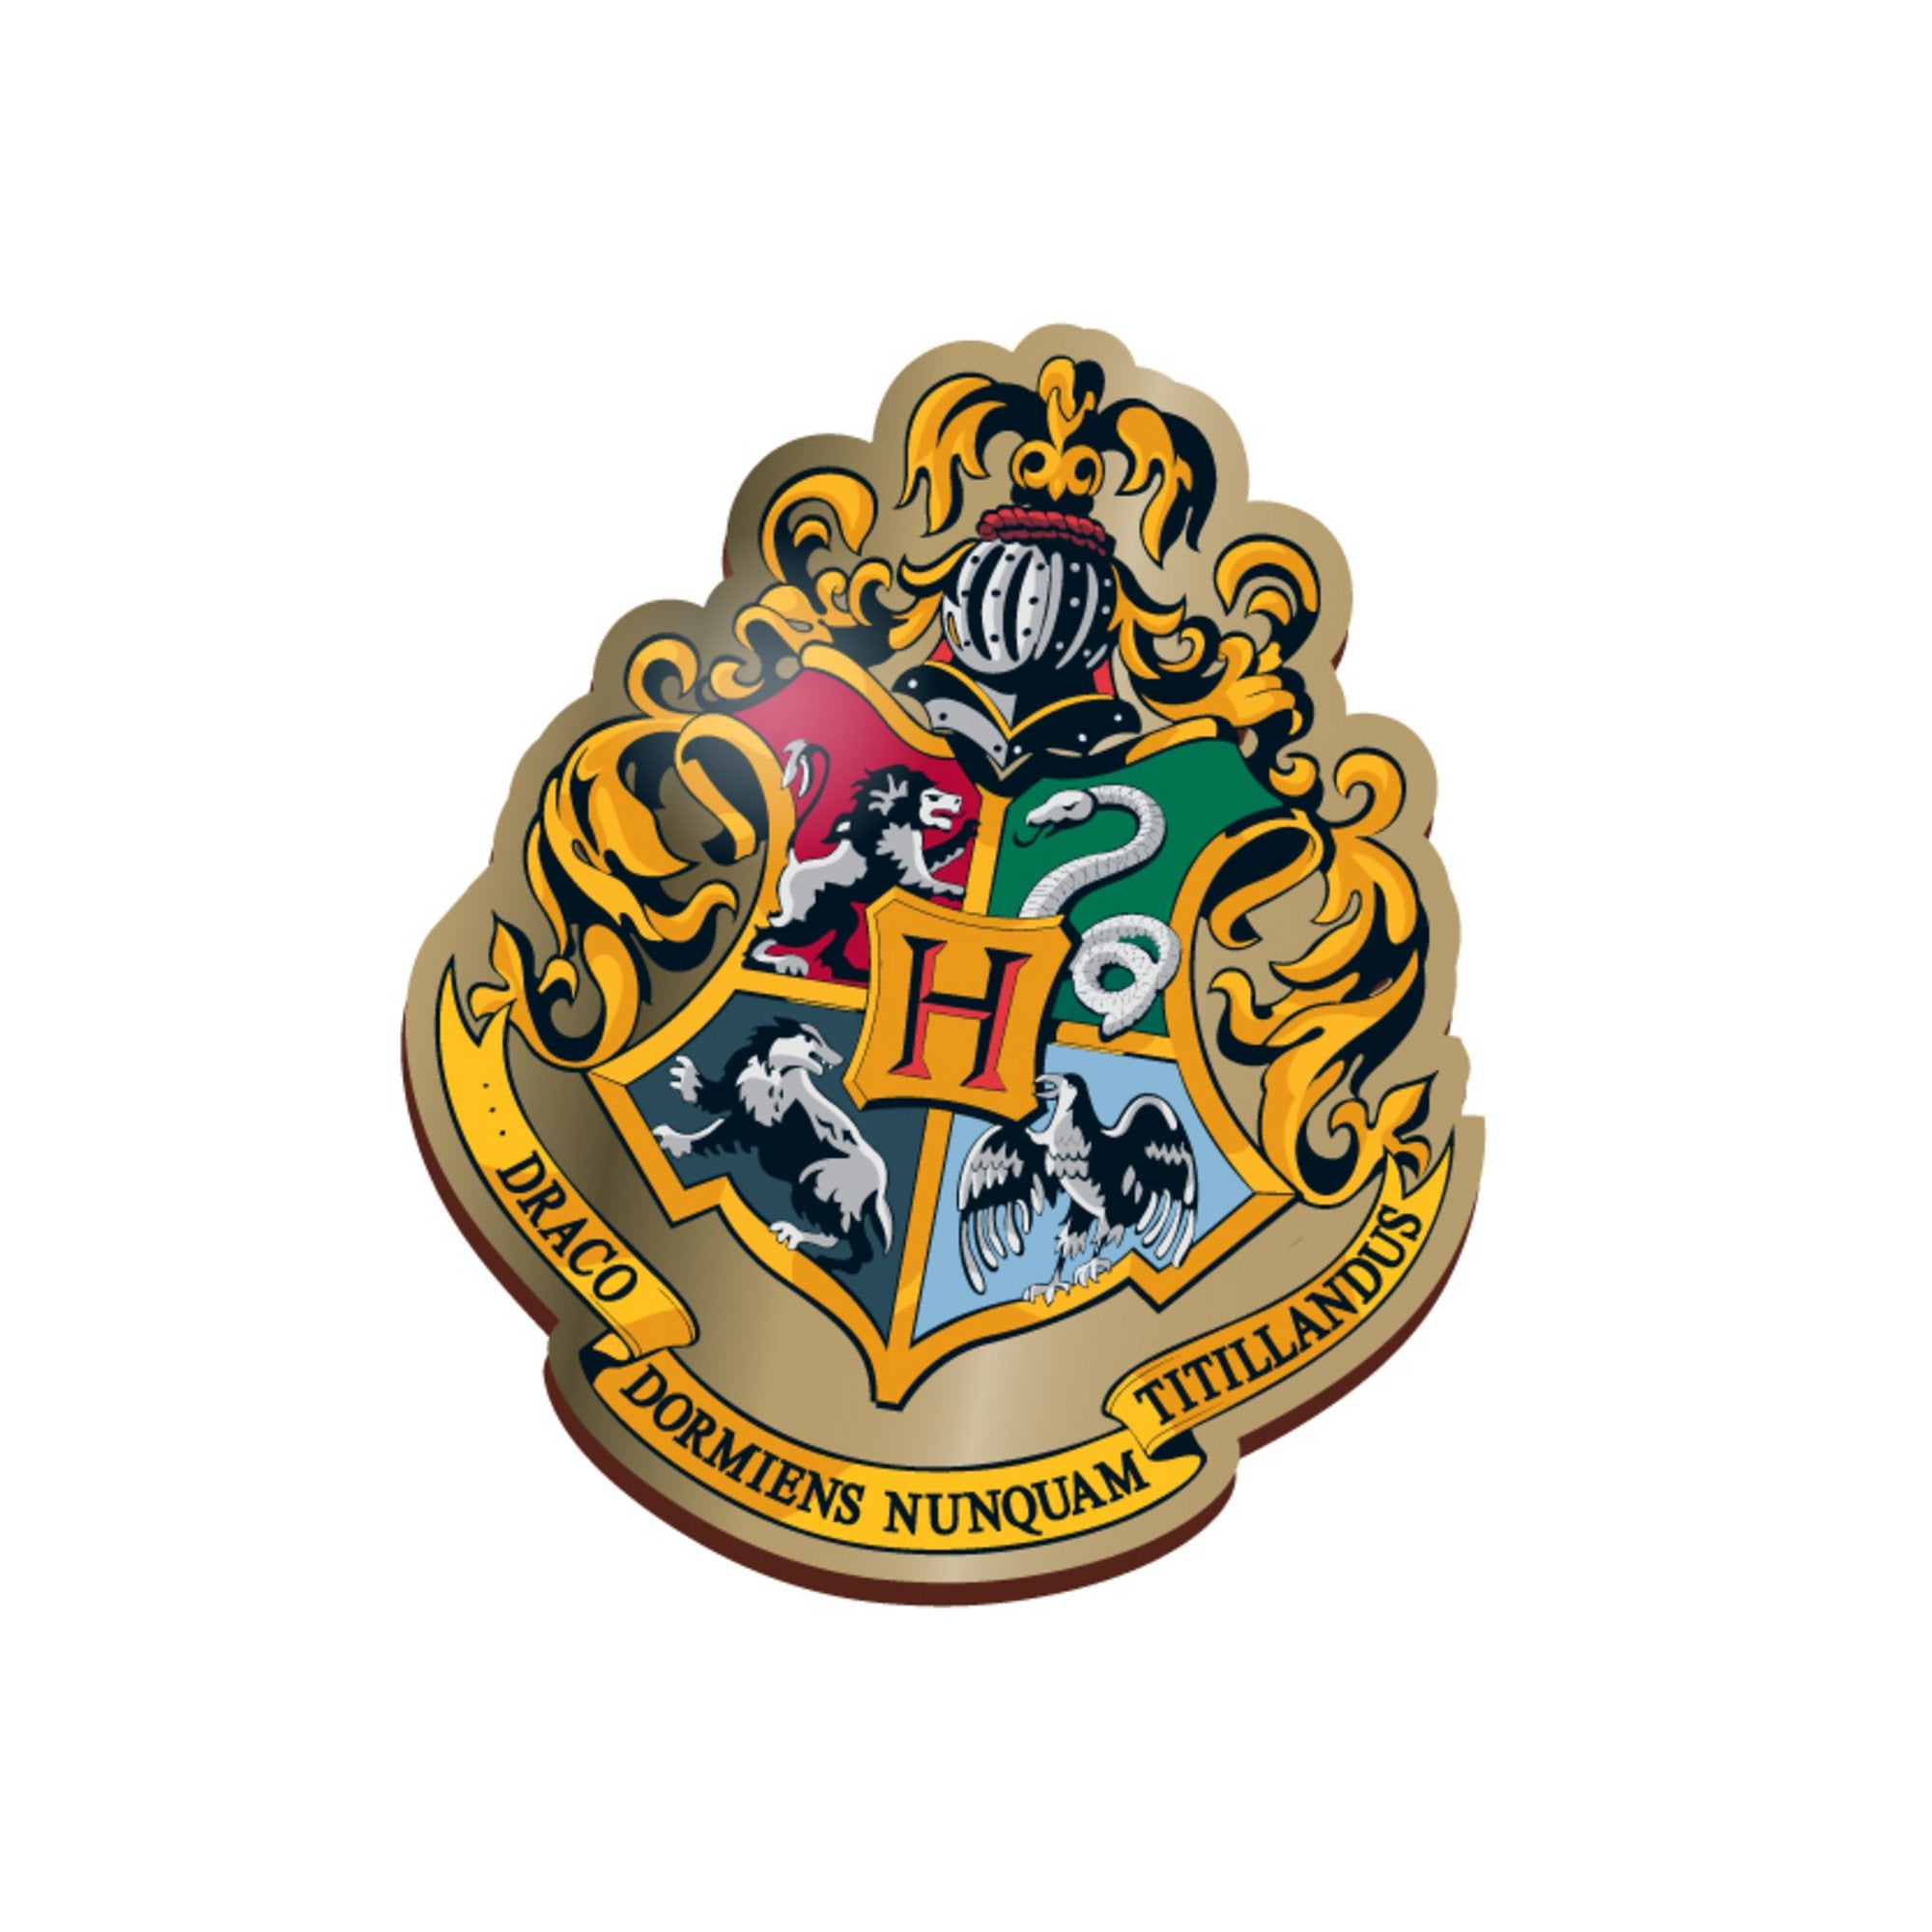 Harry Potter Pin Badge - Hogwarts Crest